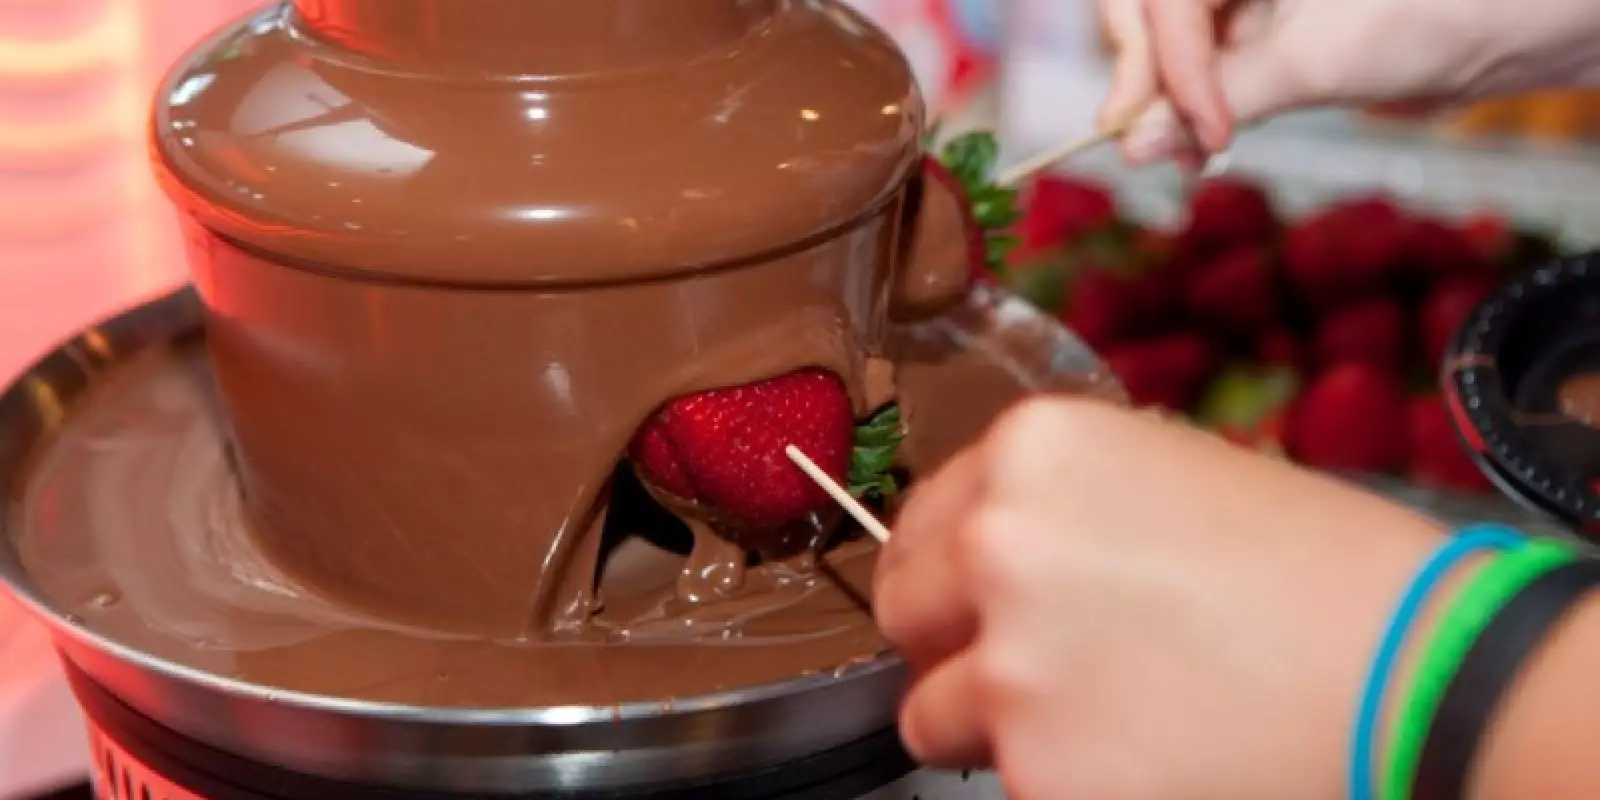 Czekolada na fontannę czekoladową: co nadaje się i jak go używać? Czekolada belgijska i druga. Co lepiej wybrać i jak to powinno być? 7607_21